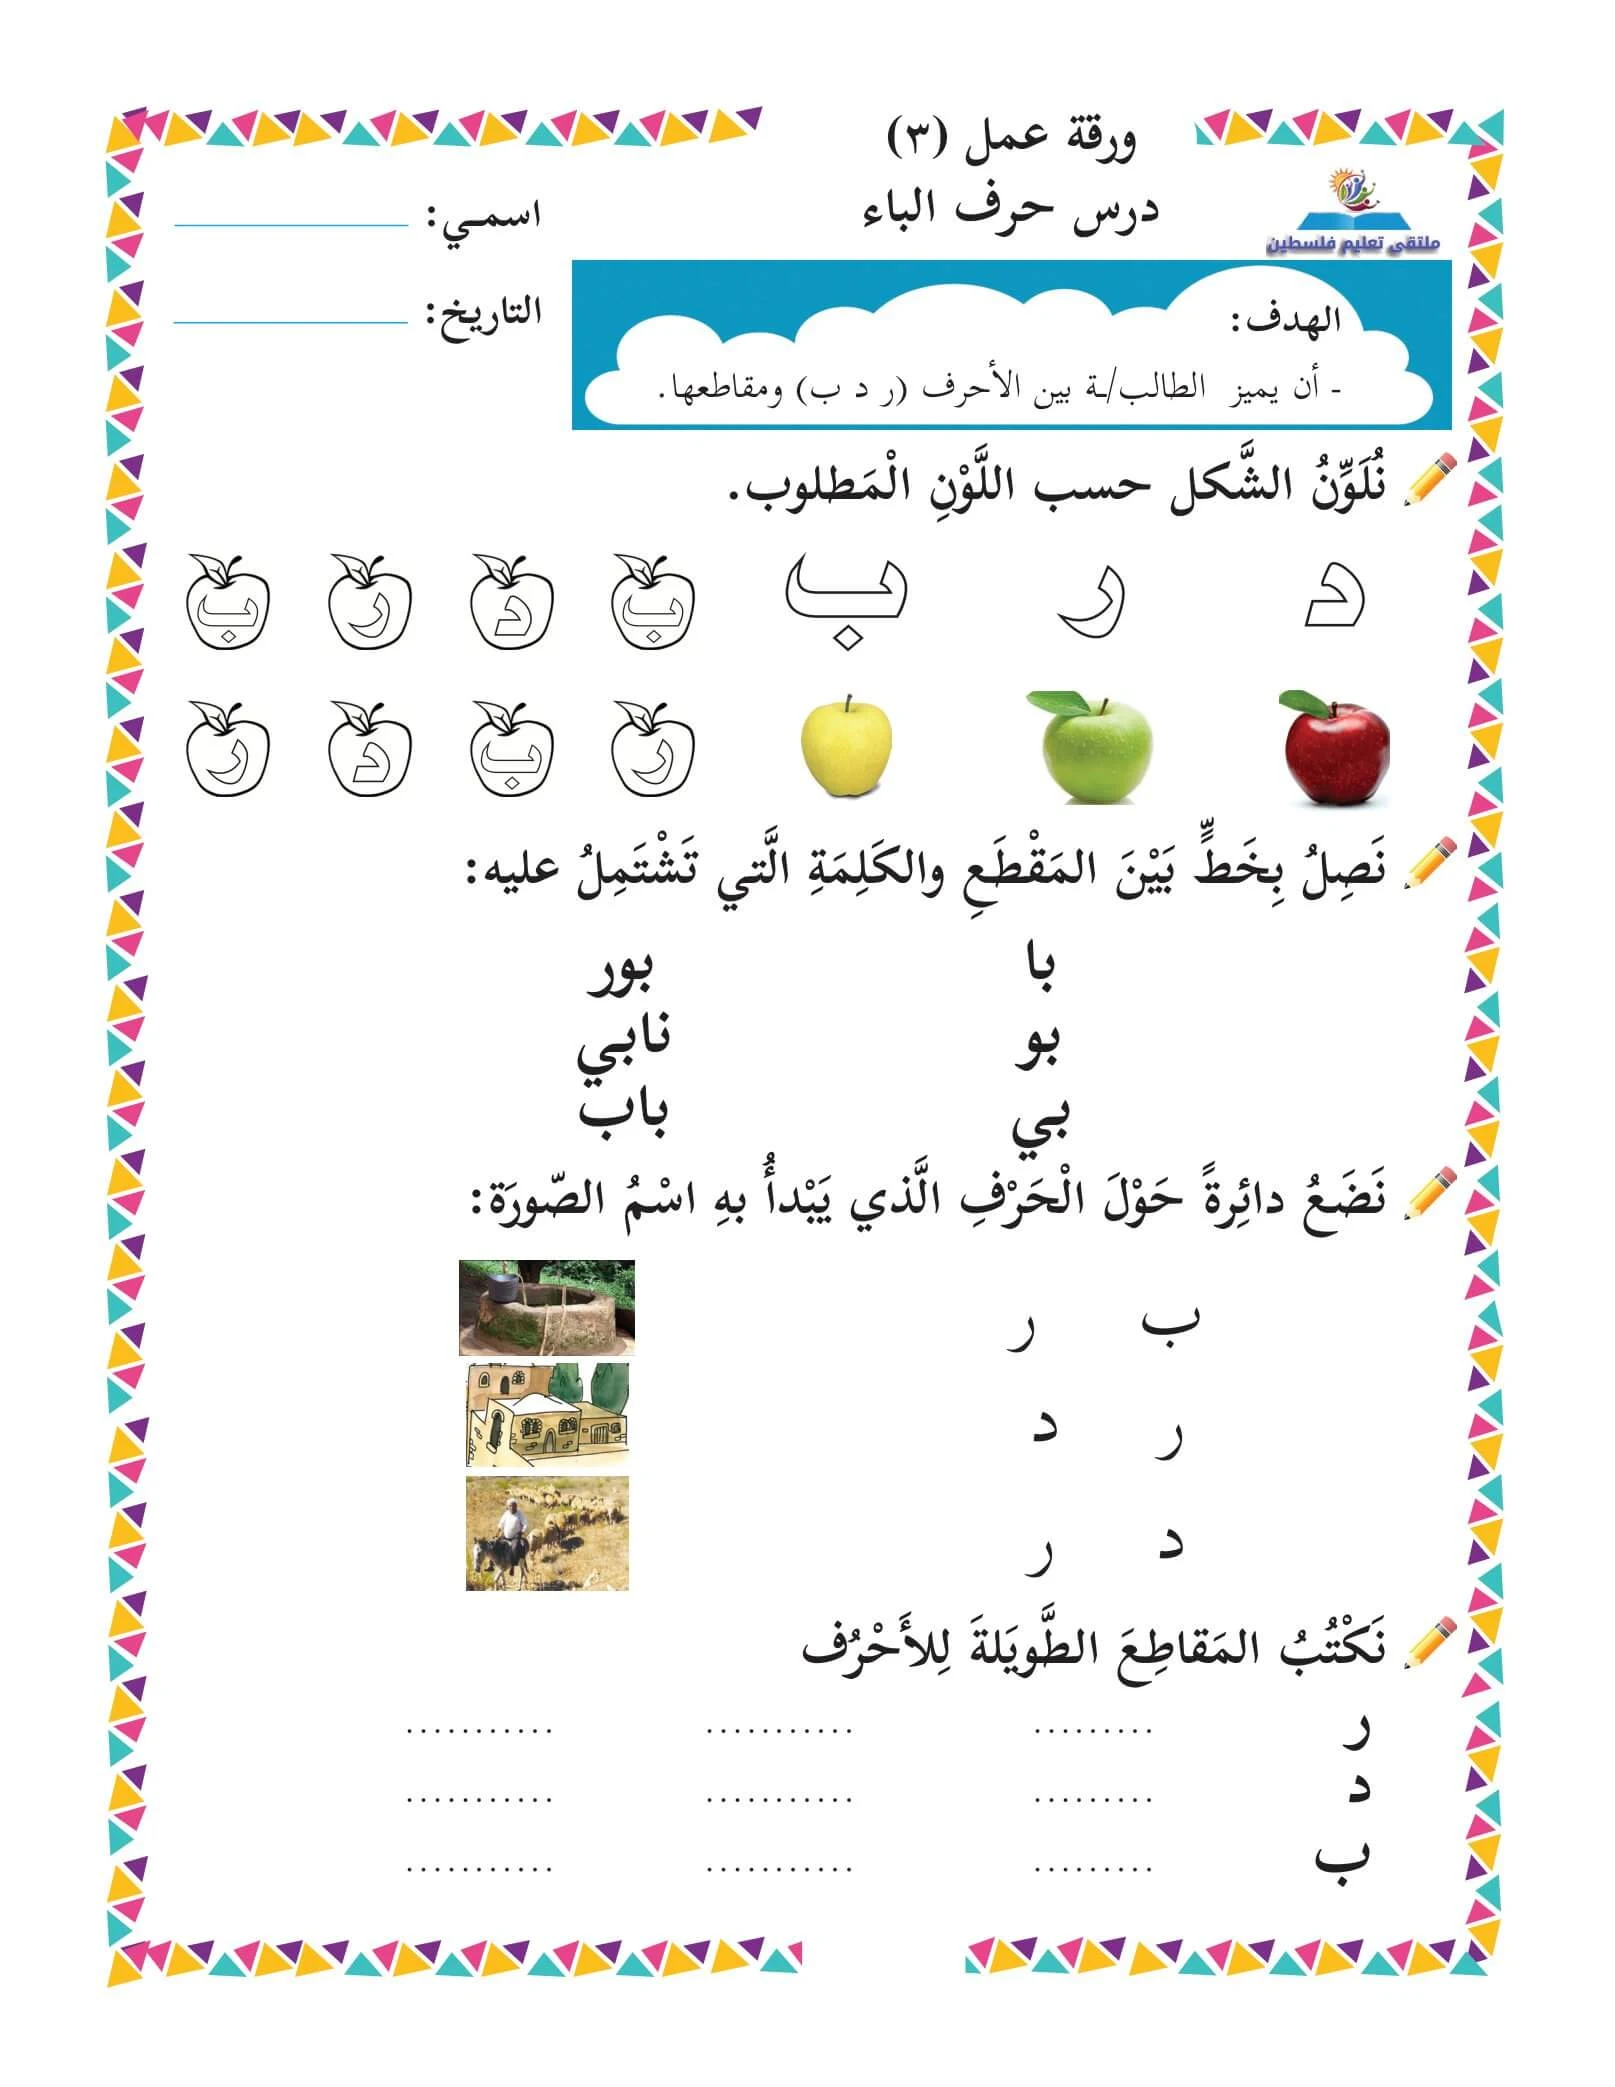 أوراق عمل الحروف العربية للصفوف الأولية: تعزيز القراءة والكتابة من الألف إلى الياء